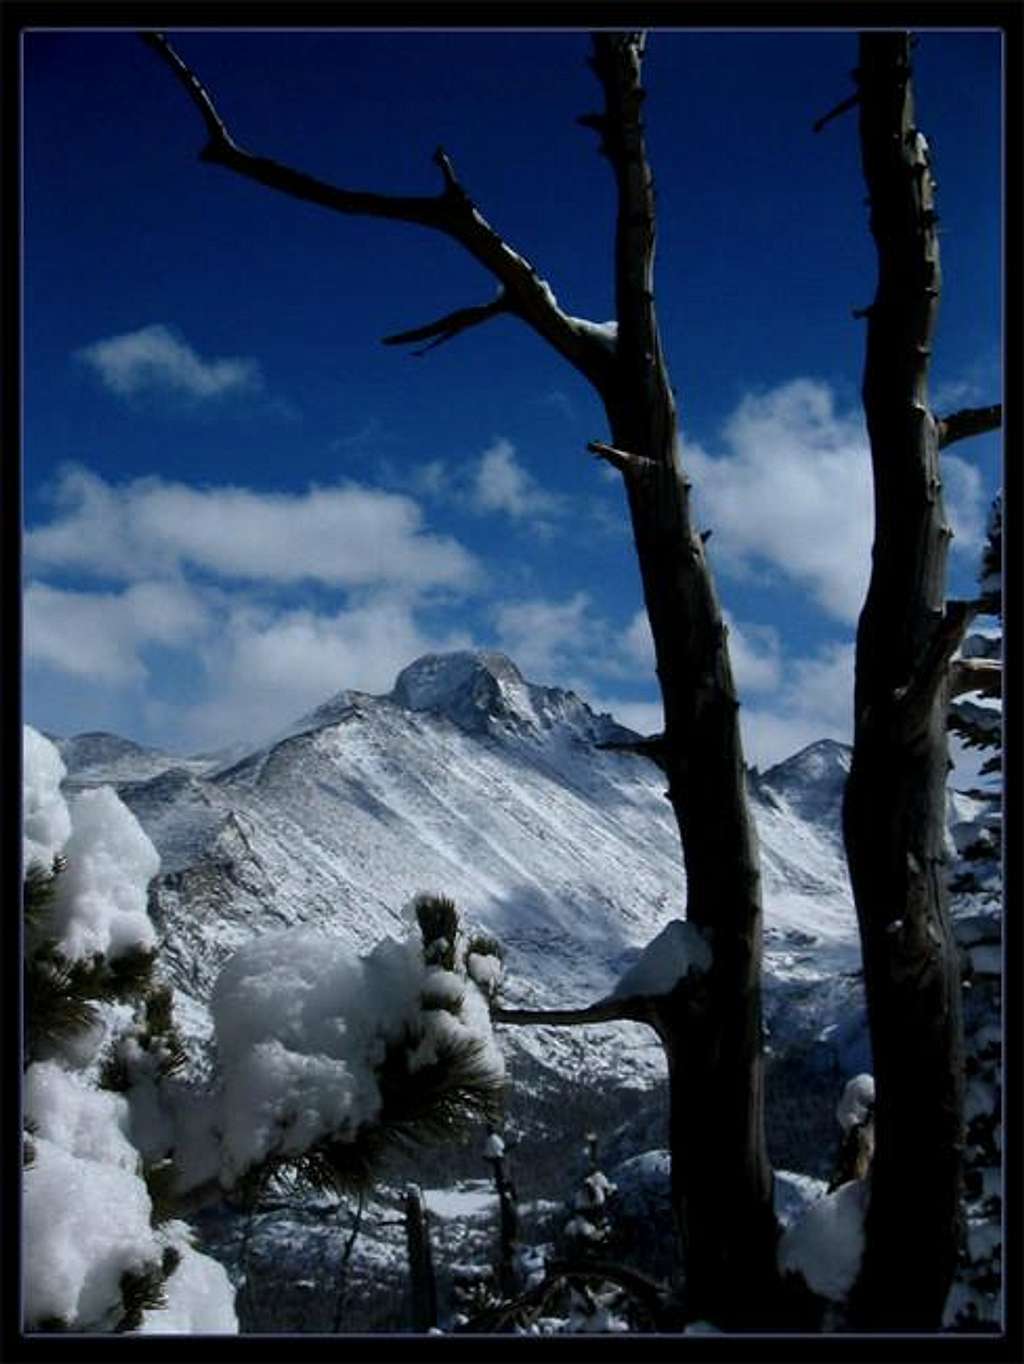 This is a photo of Longs Peak...